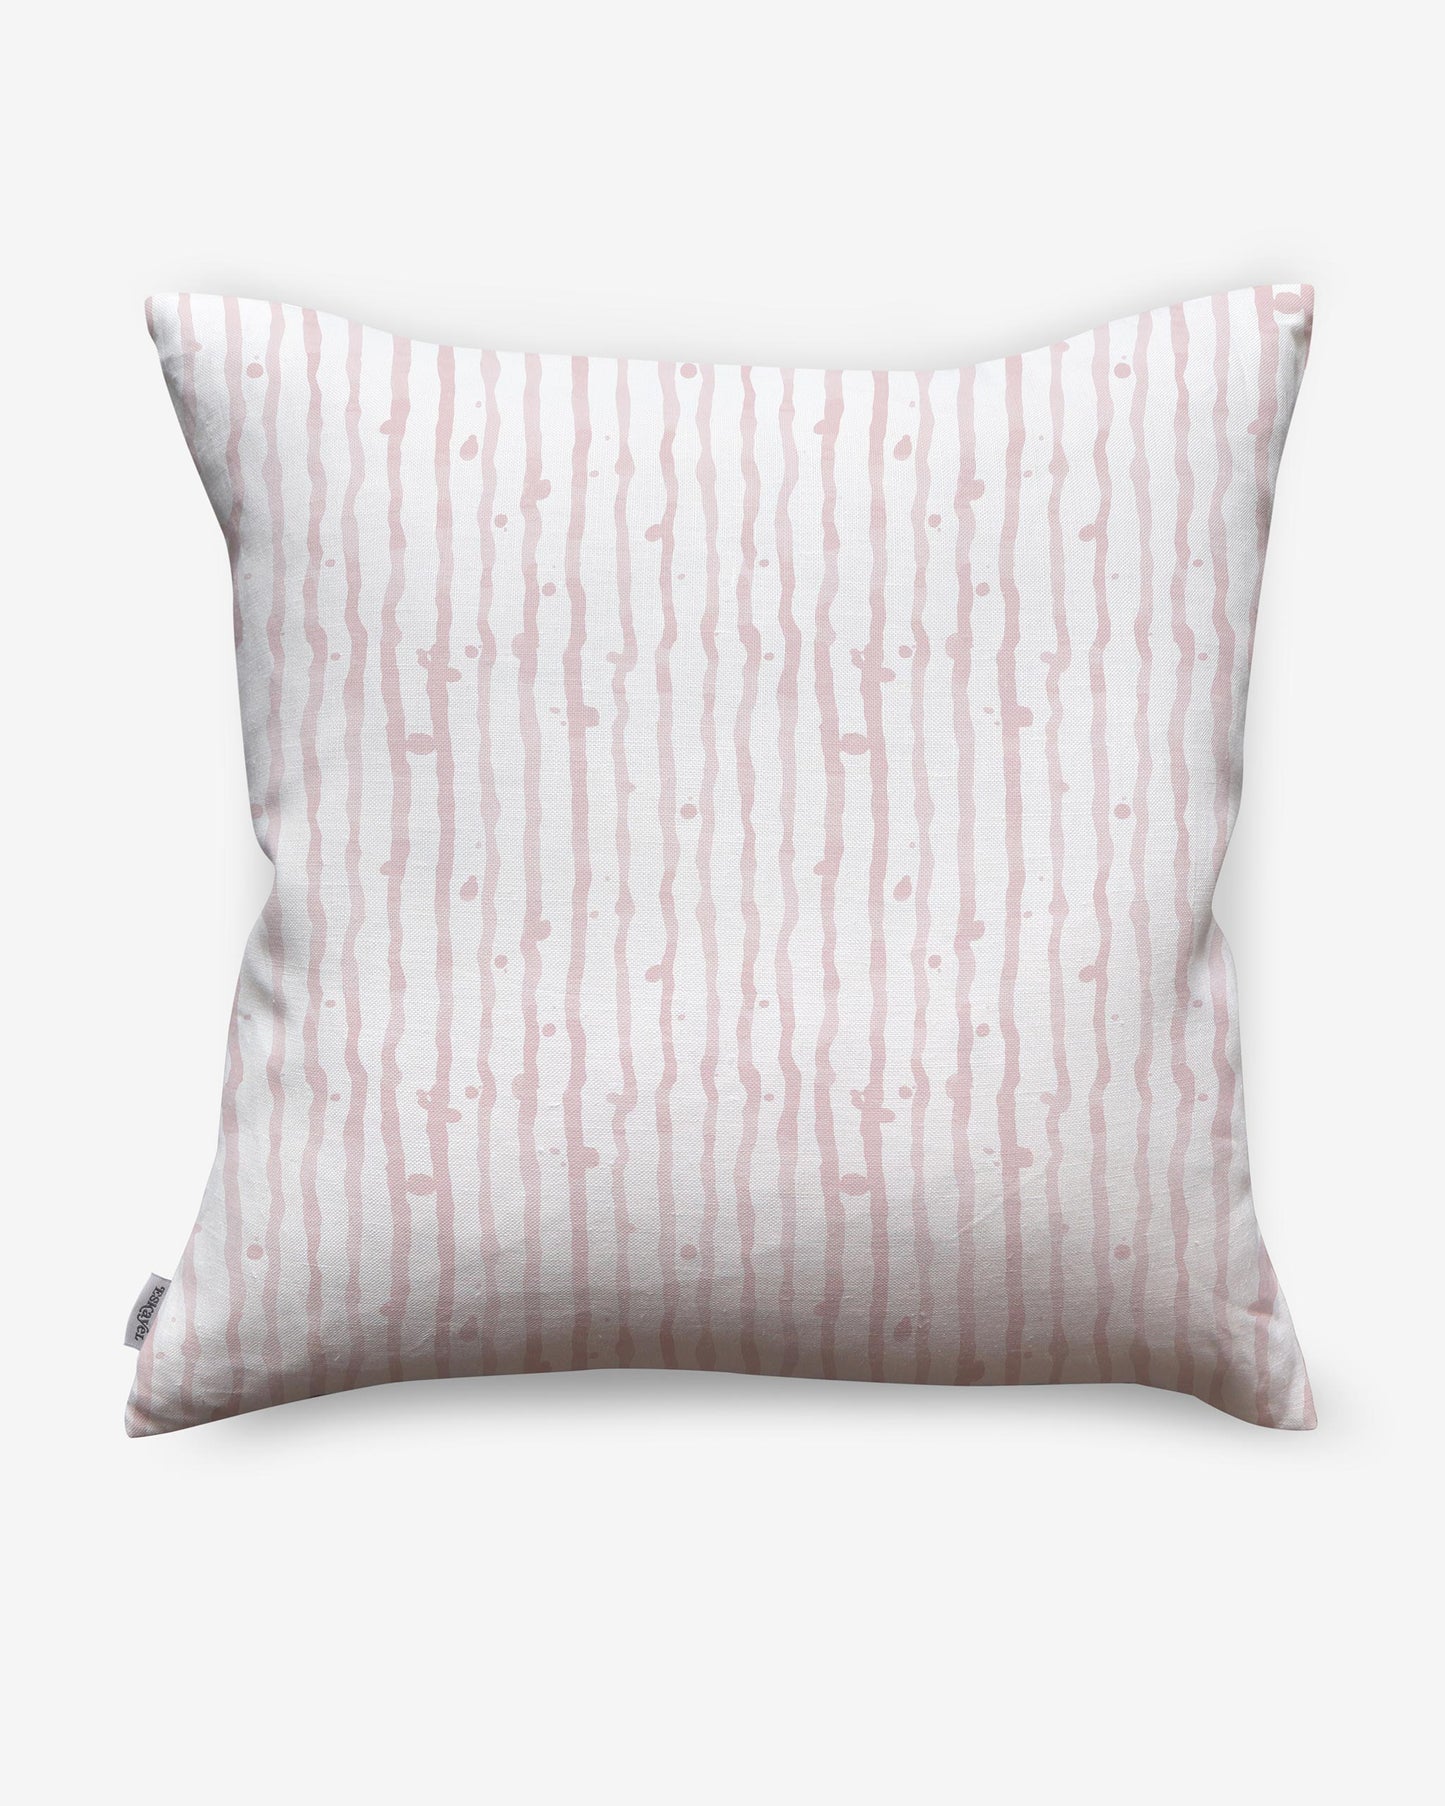 Drippy Stripe Pillow 24' x 24'||Coral